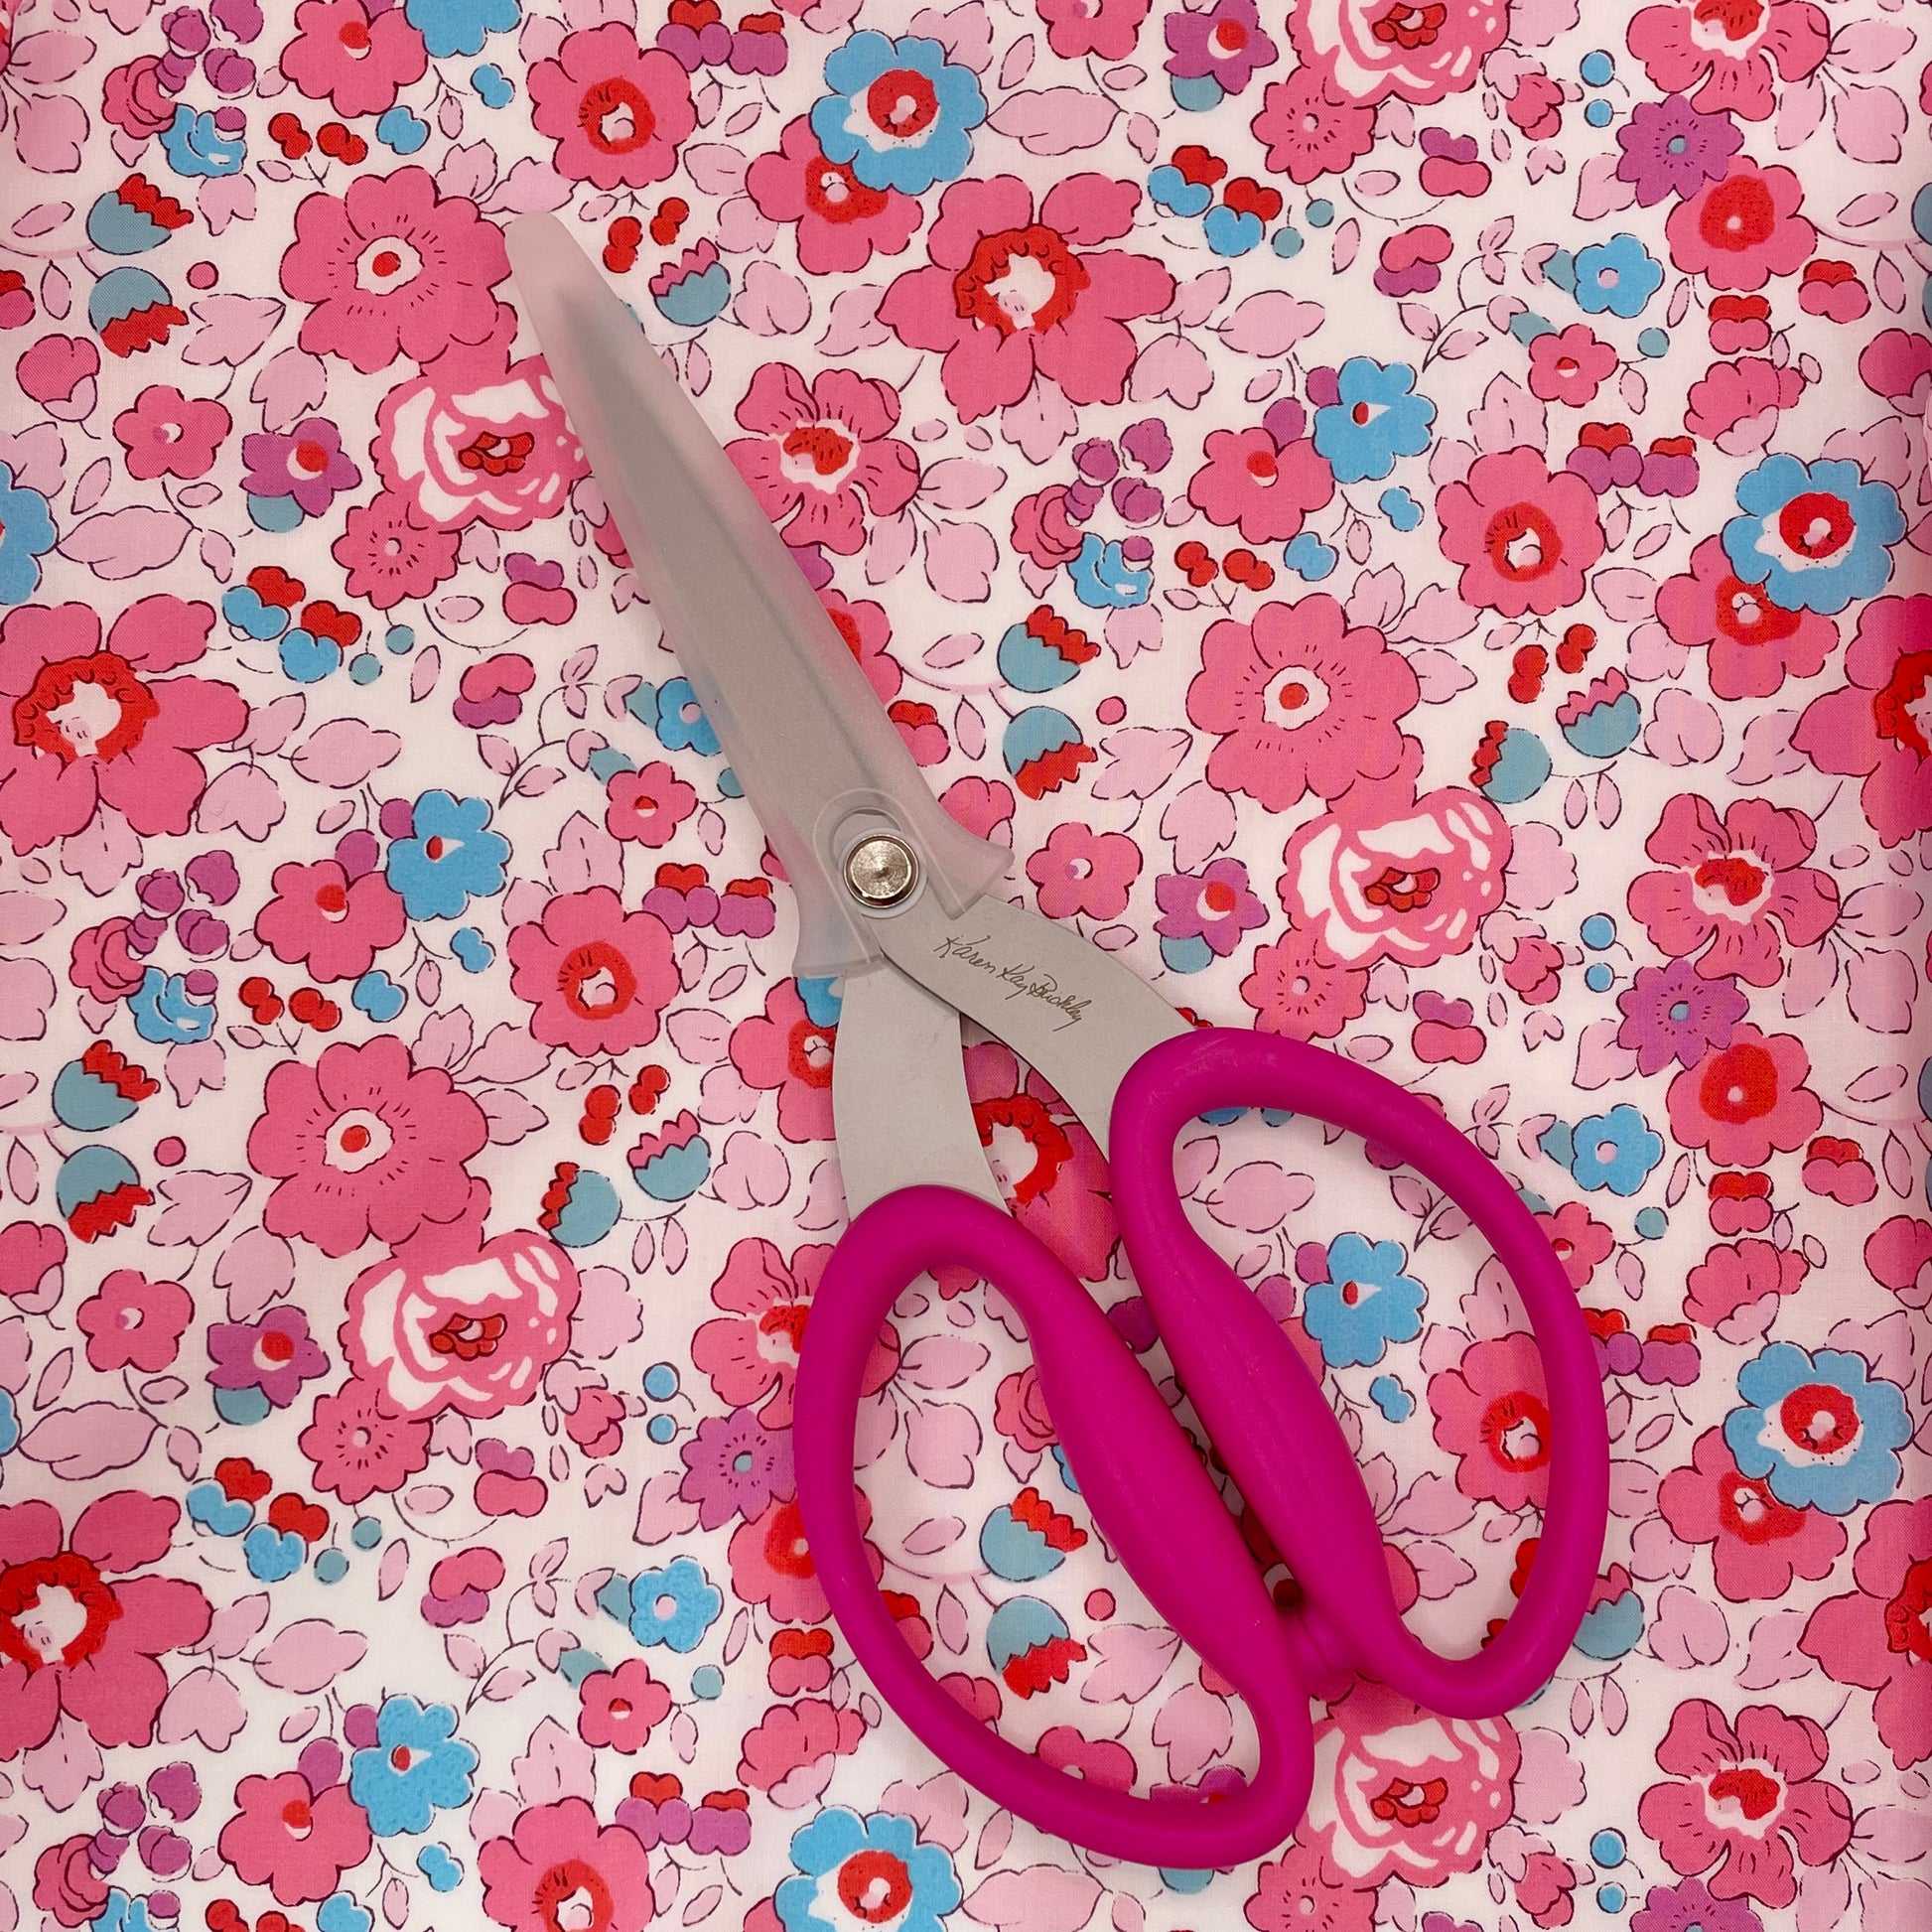 Karen Kay Buckley Multipurpose Scissors 7 1/2” - Pink – sew.be curated